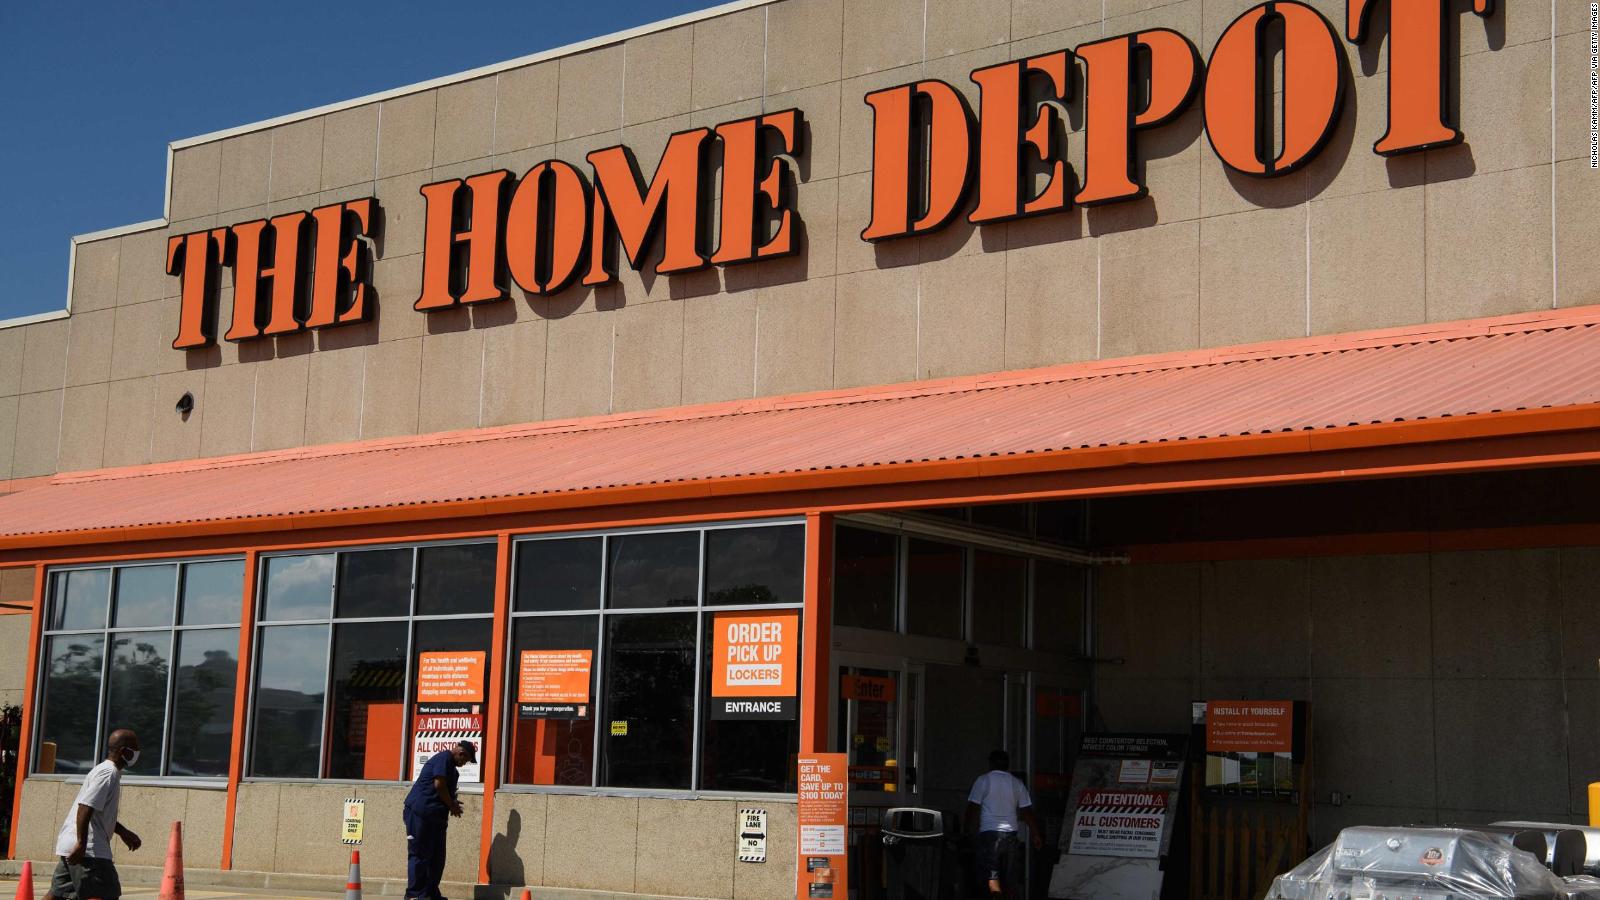 Home Depot planea aumentar salarios y beneficios